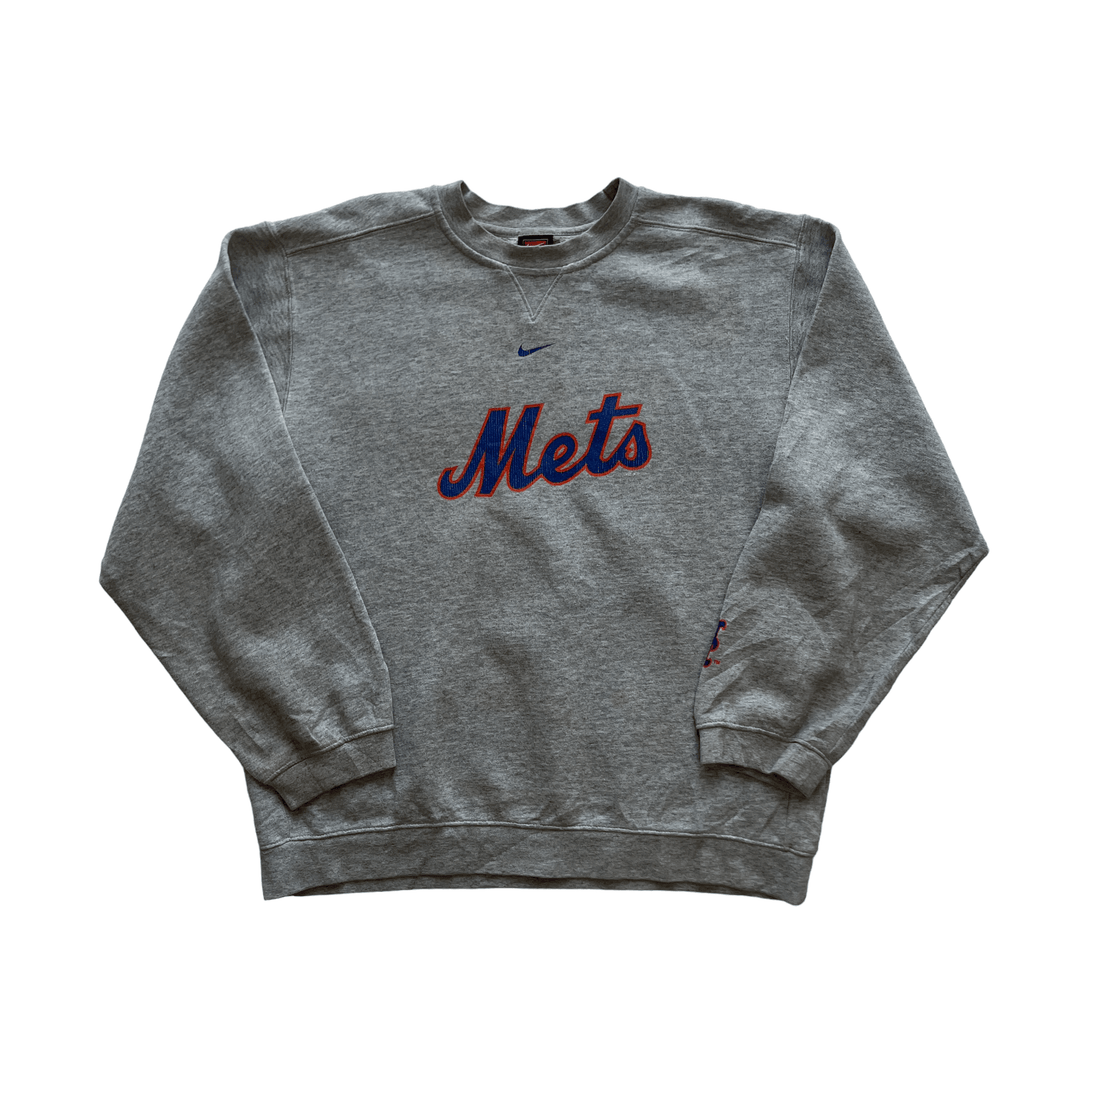 Vintage 90s Grey Nike Mets Sweatshirt - Small - The Streetwear Studio